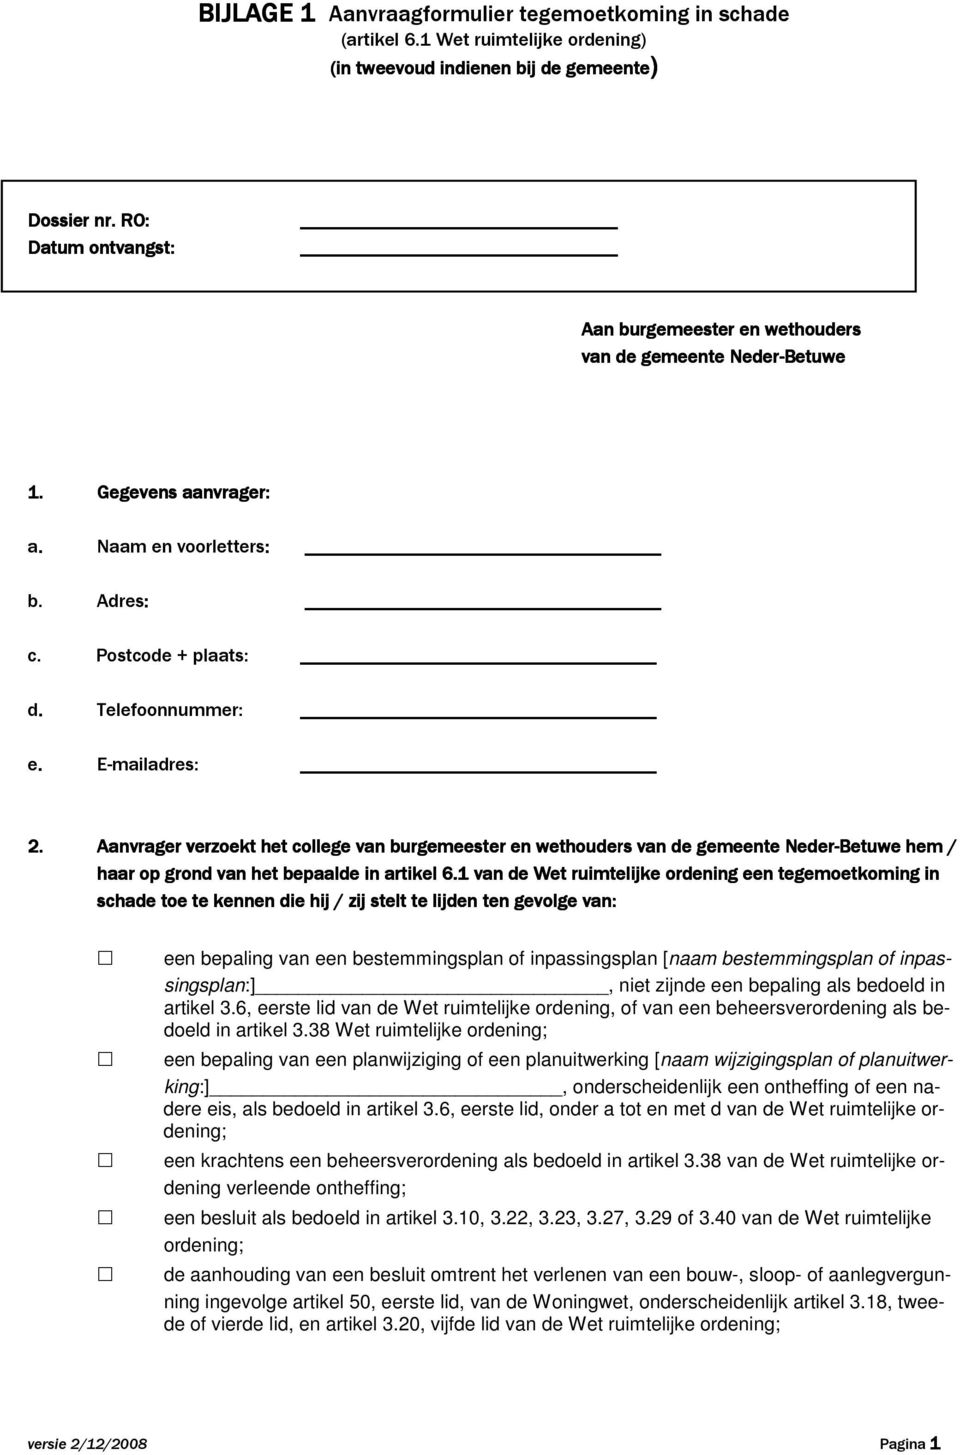 Aanvrager verzoekt het college van burgemeester en wethouders van de gemeente Neder-Betuwe hem / haar op grond van het bepaalde in artikel 6.